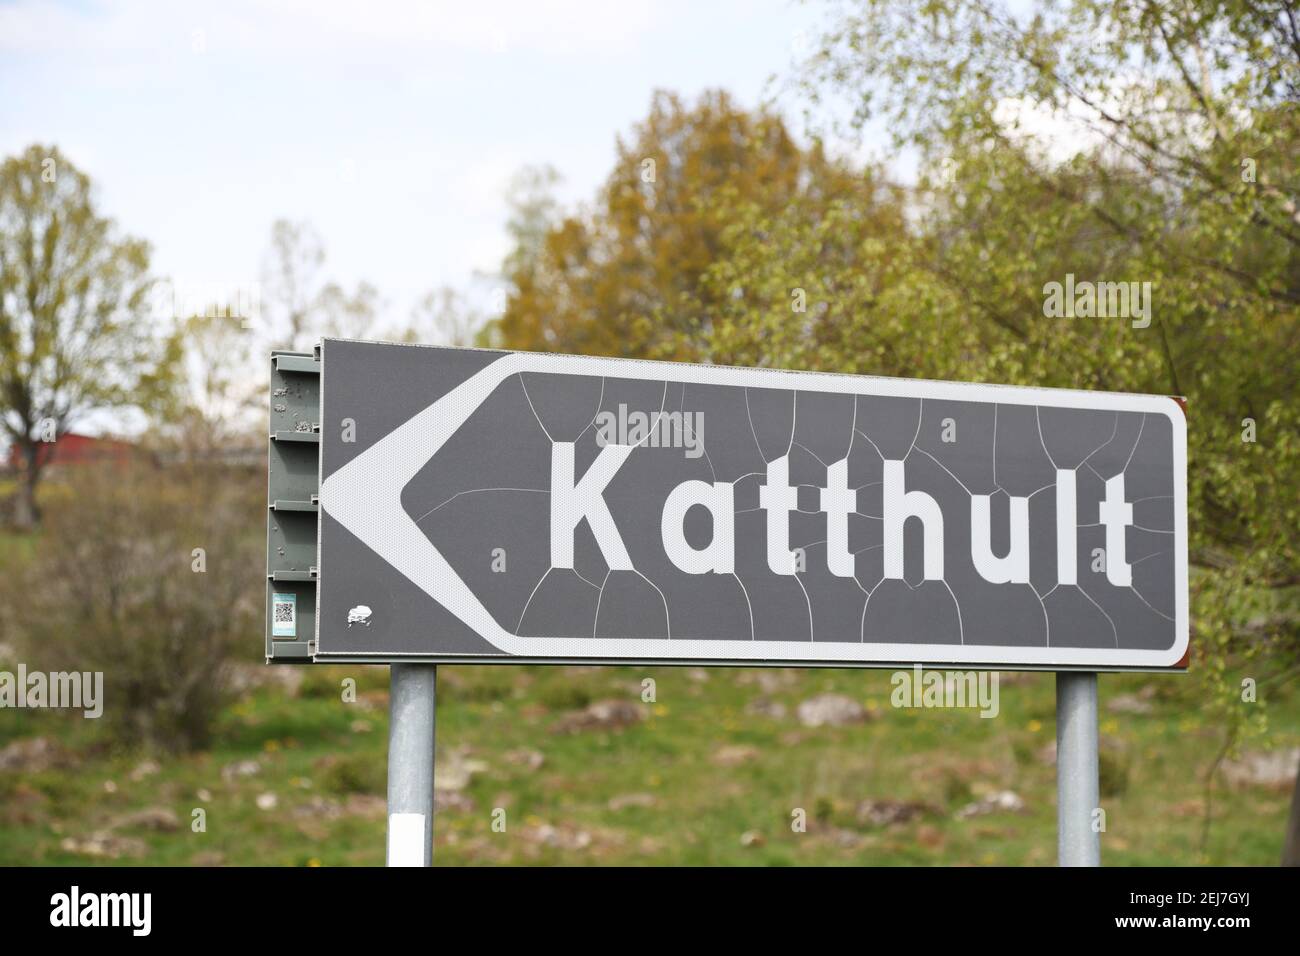 KATTHULT, SCHWEDEN- 15. MAI 2019:Katthult, bekannt aus Astrid Lindgrens Büchern. Katthult ist der Name des Bauernhofes, auf dem die fiktive Figur Emil in Lönneberga lebte. Stockfoto